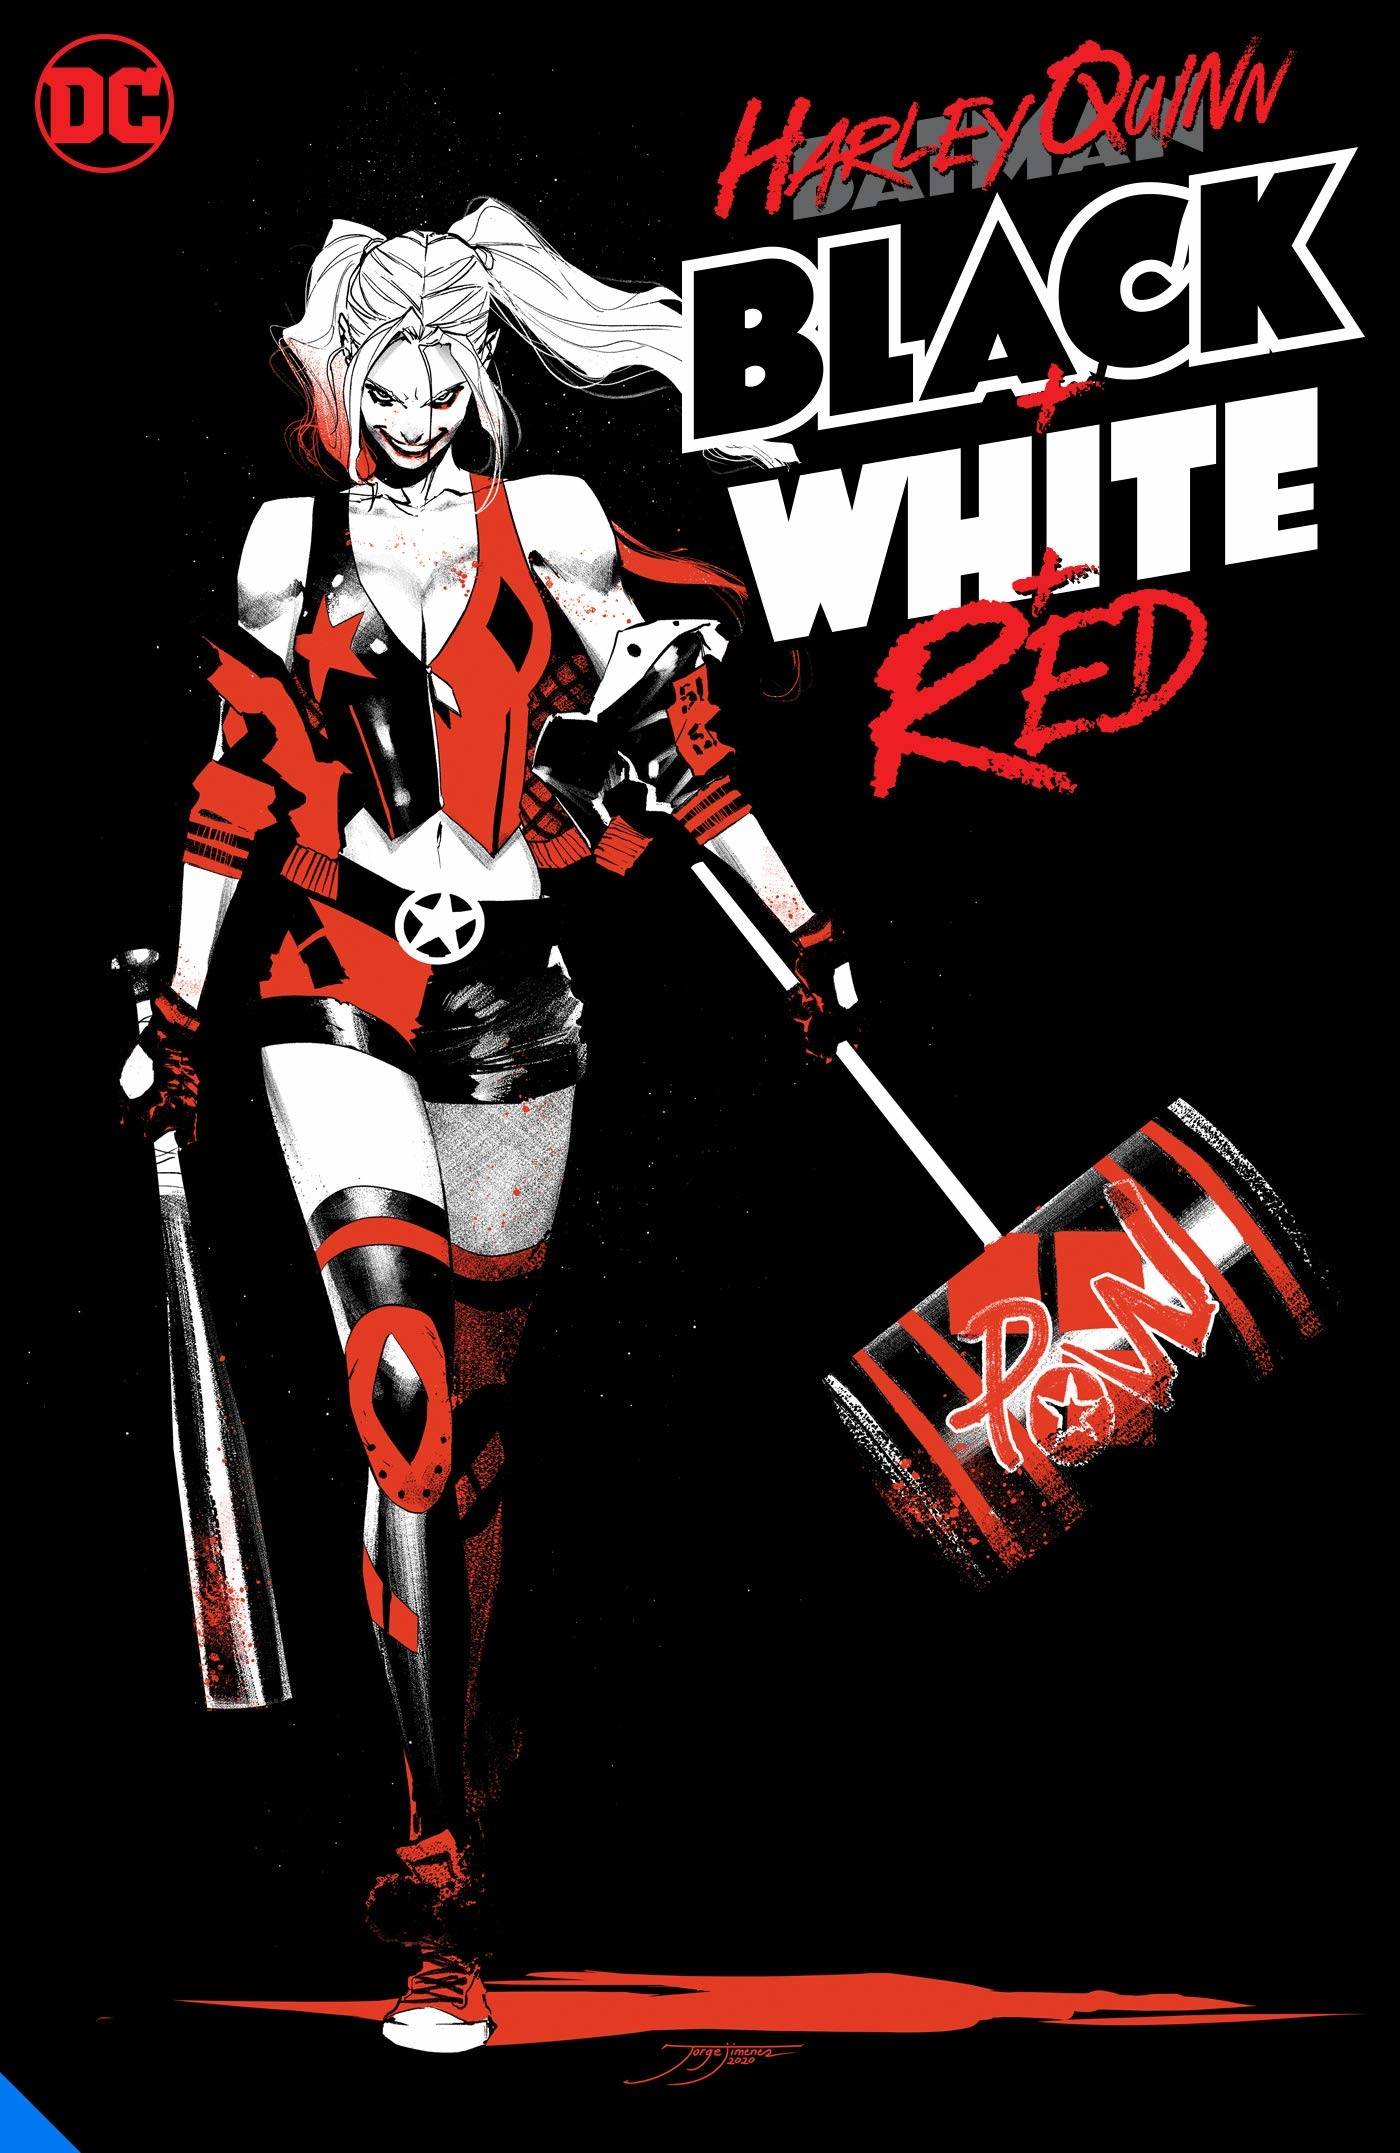 Harley Quinn: Black & White & Red s/c